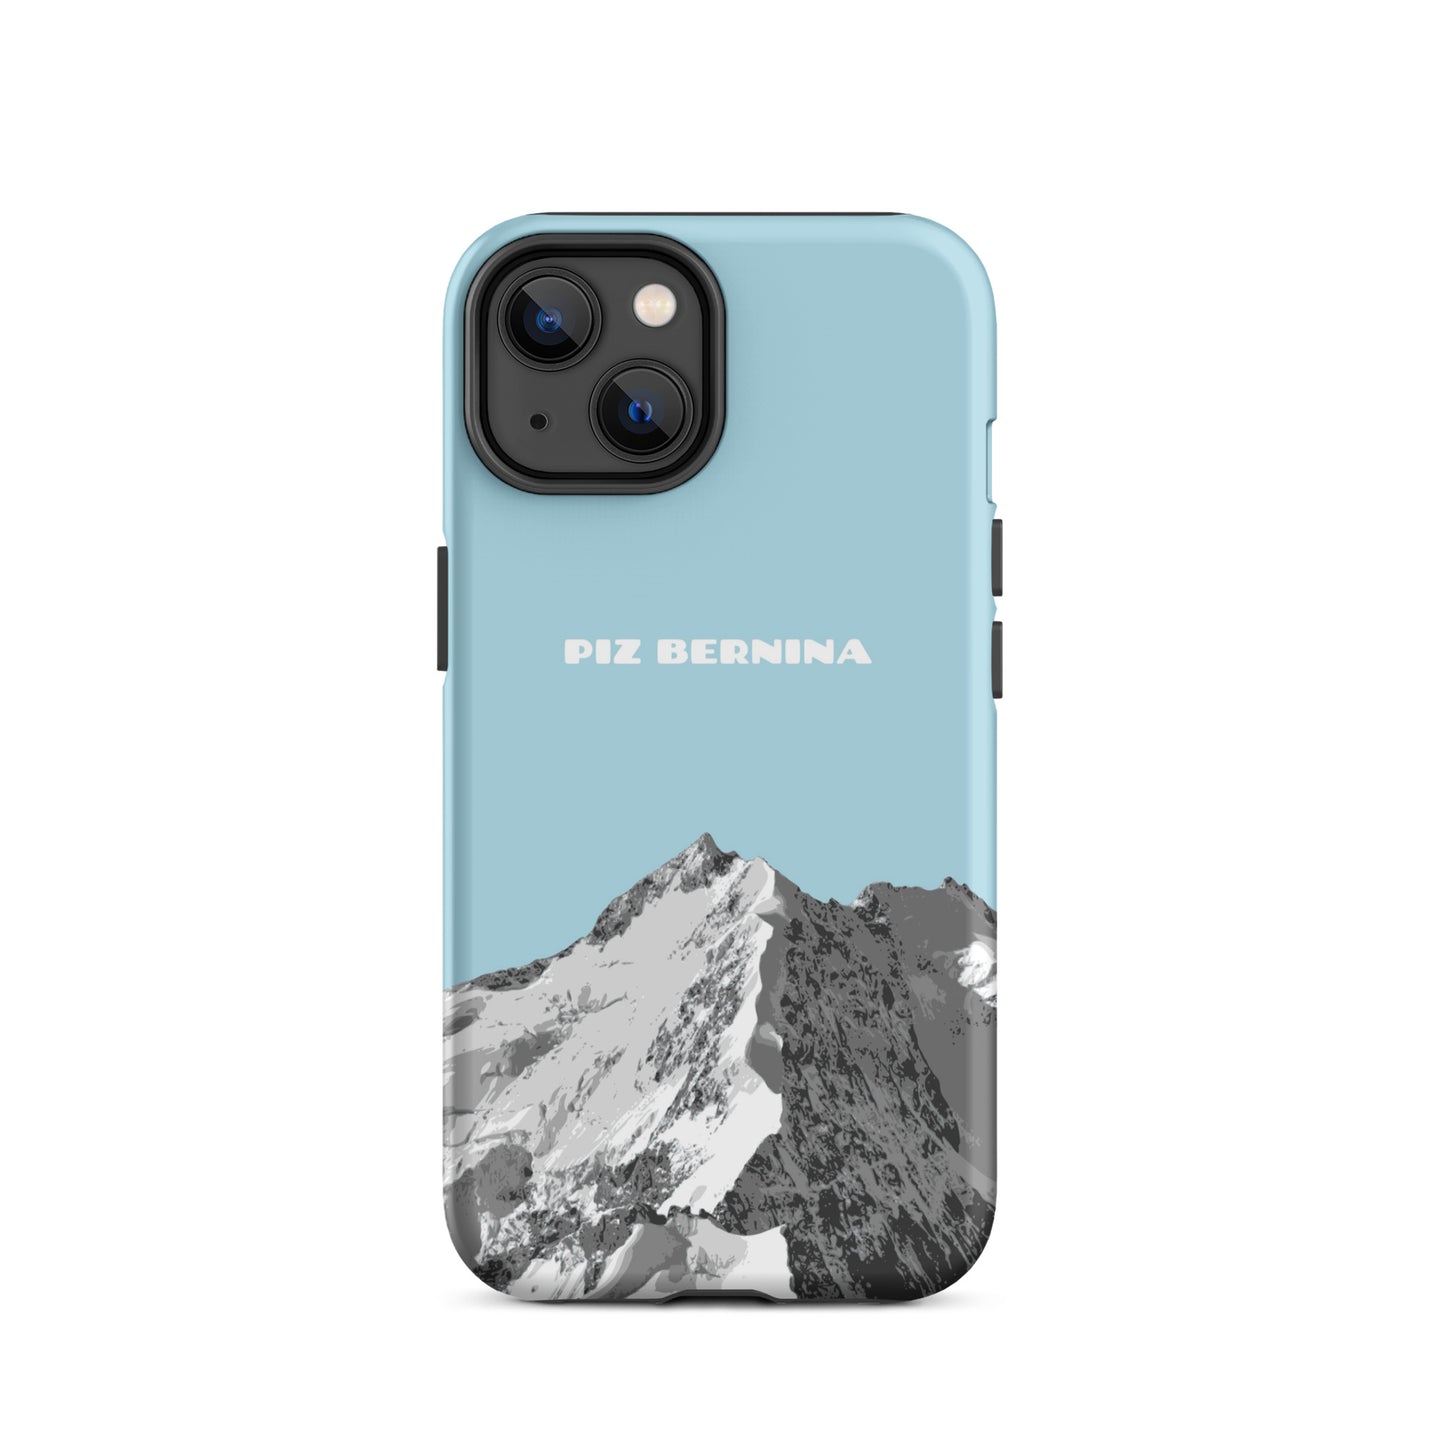 Hülle für das iPhone 14 von Apple in der Farbe Hellblau, dass den Piz Bernina in Graubünden zeigt.